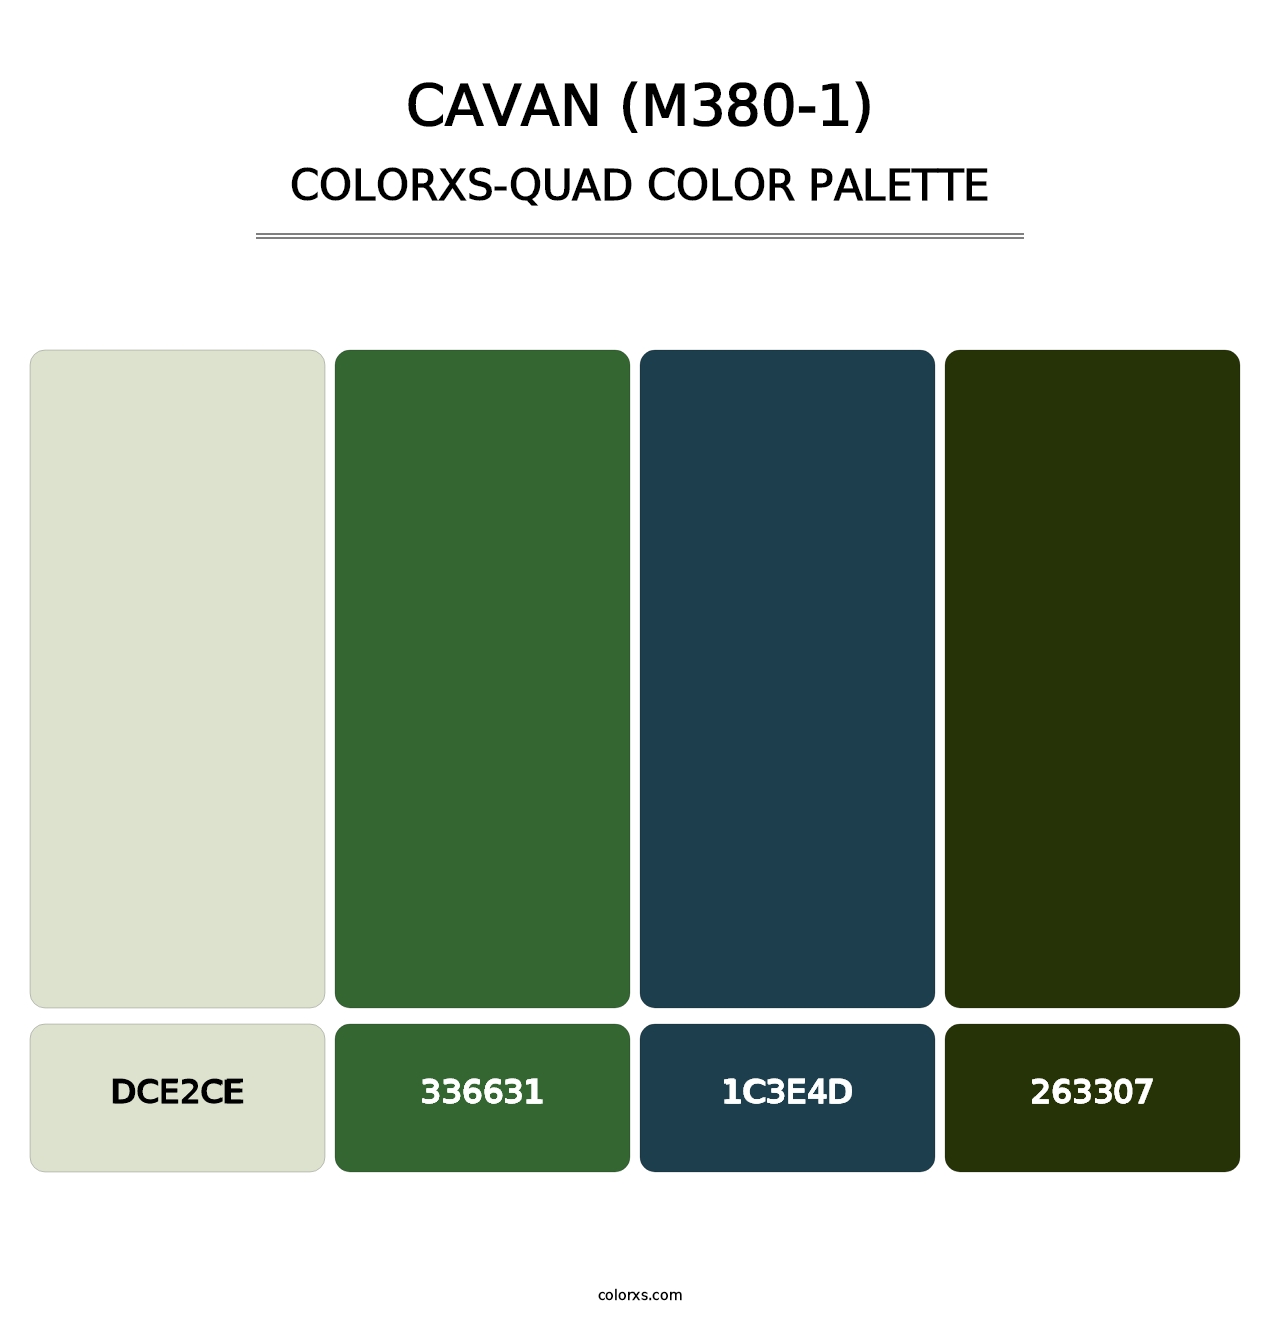 Cavan (M380-1) - Colorxs Quad Palette